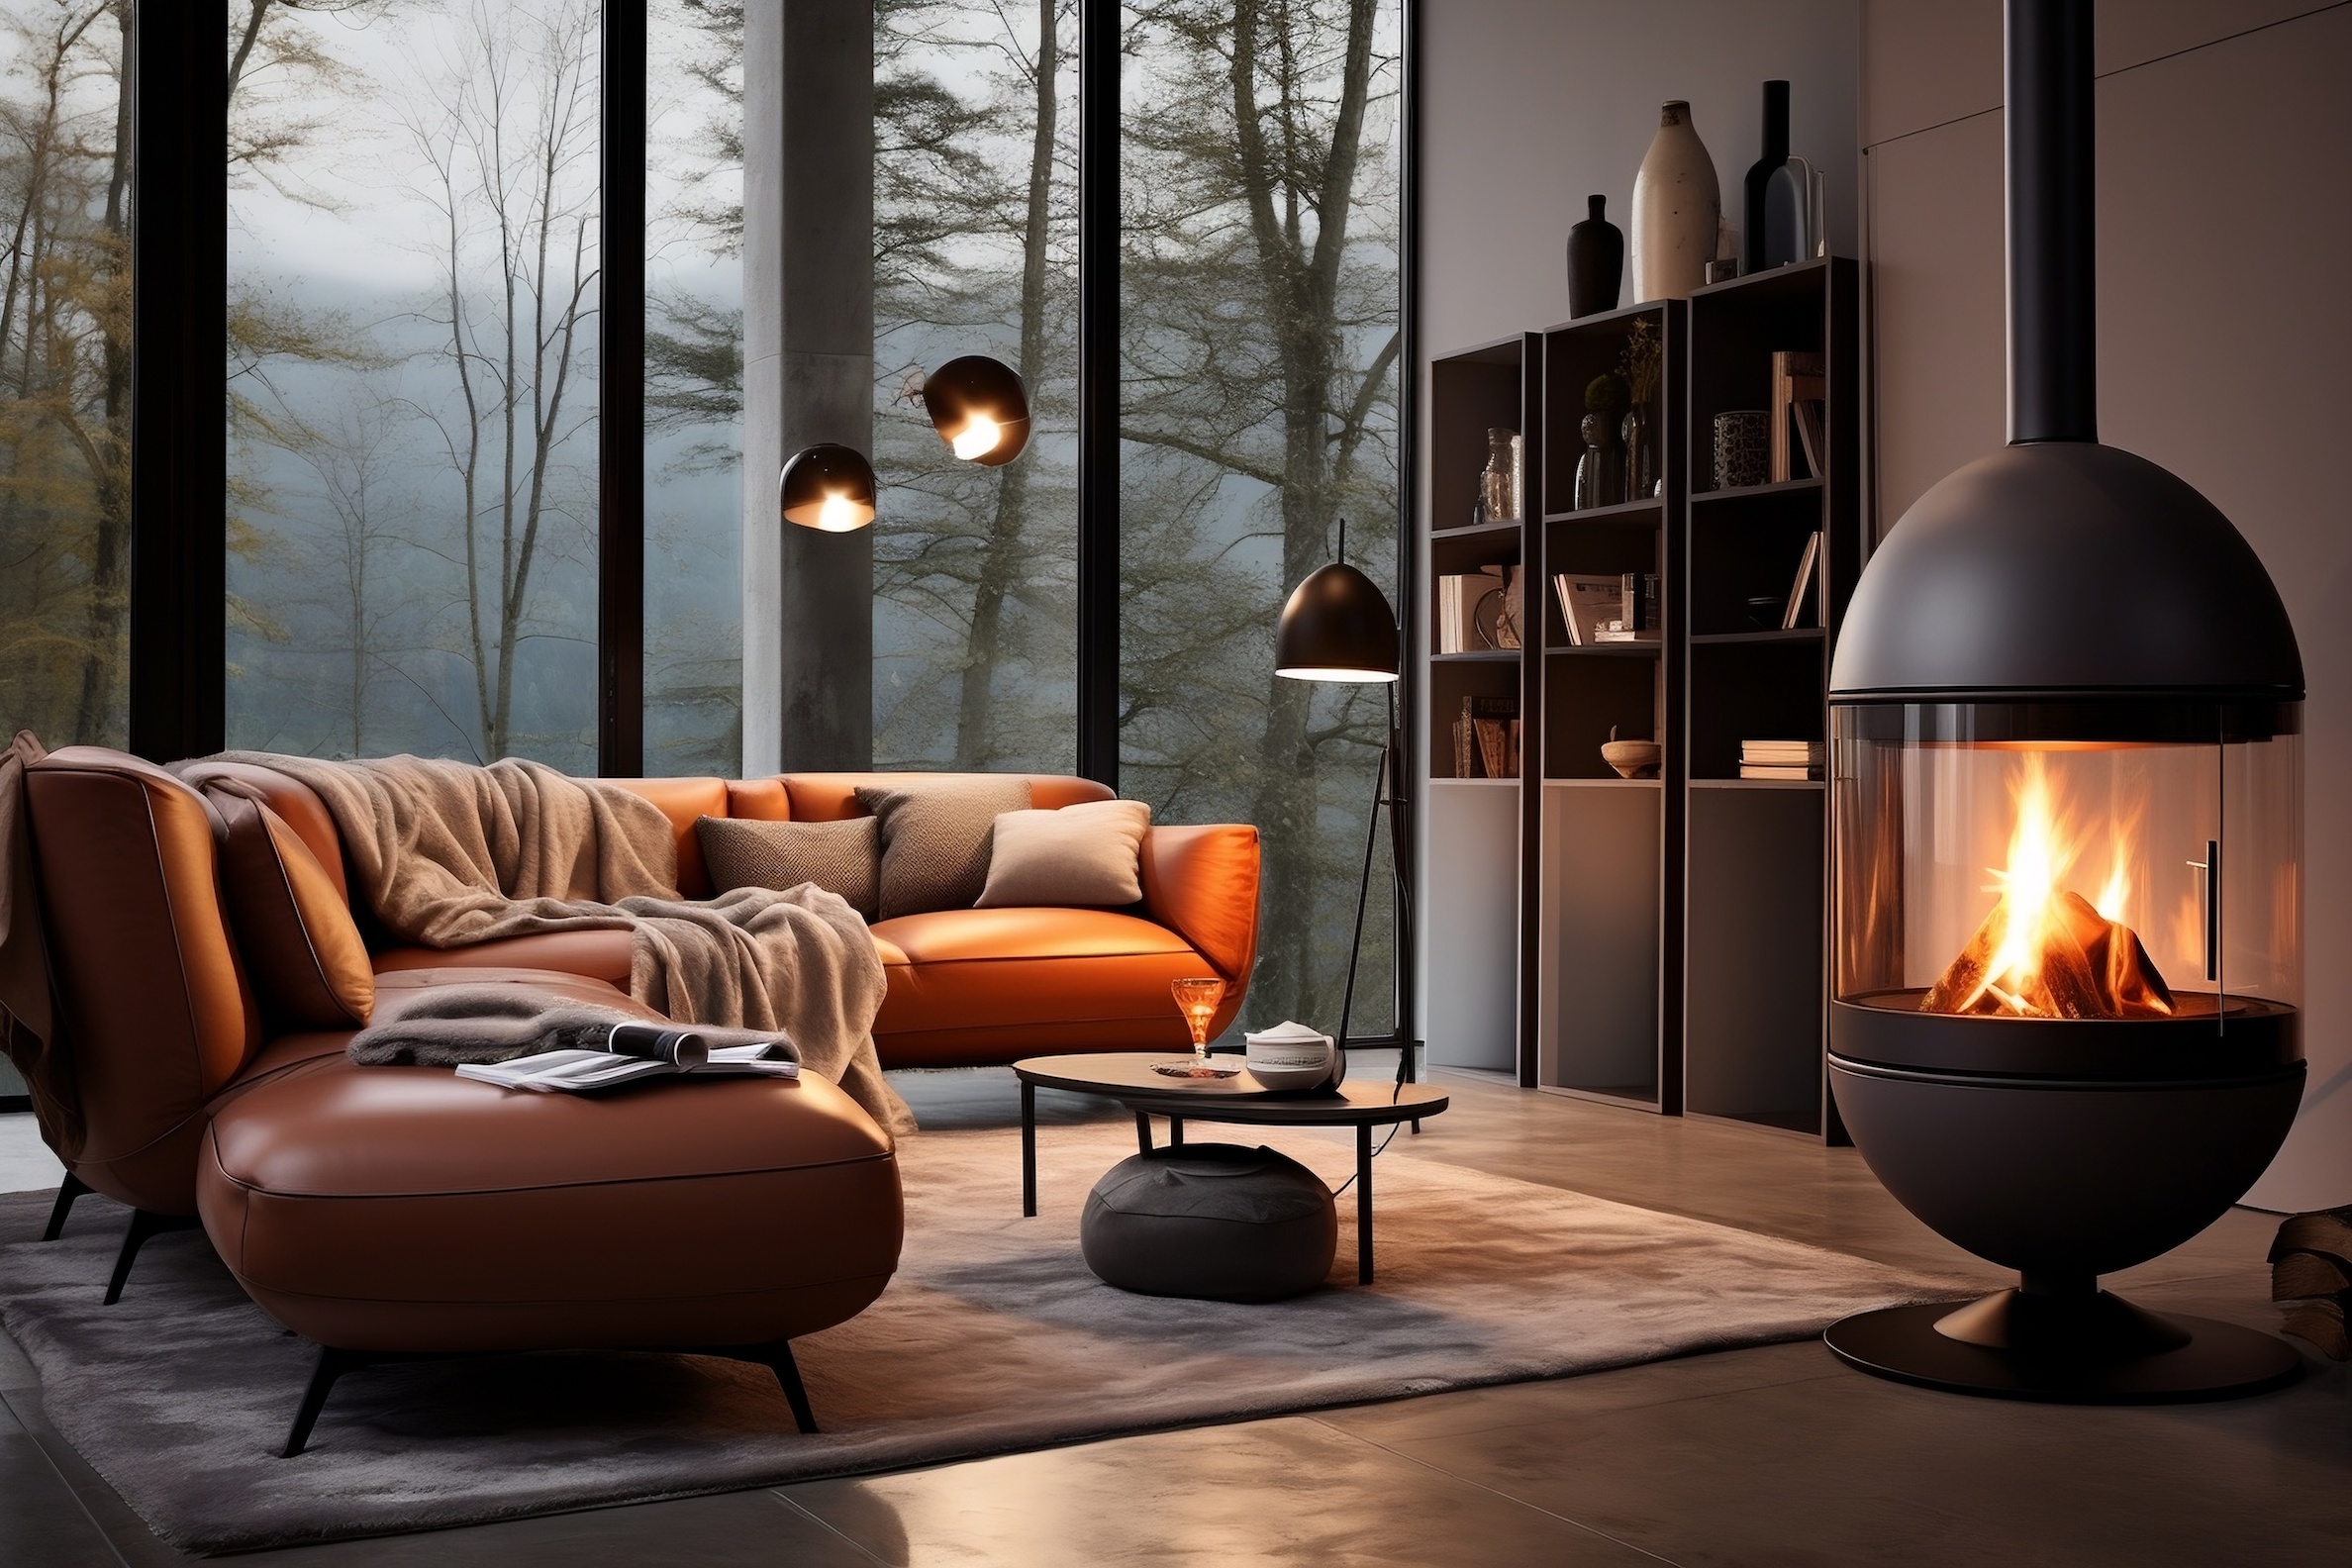 Le chauffage au bois est adopté par de nombreux foyers français. © Usmanify, Adobe Stock